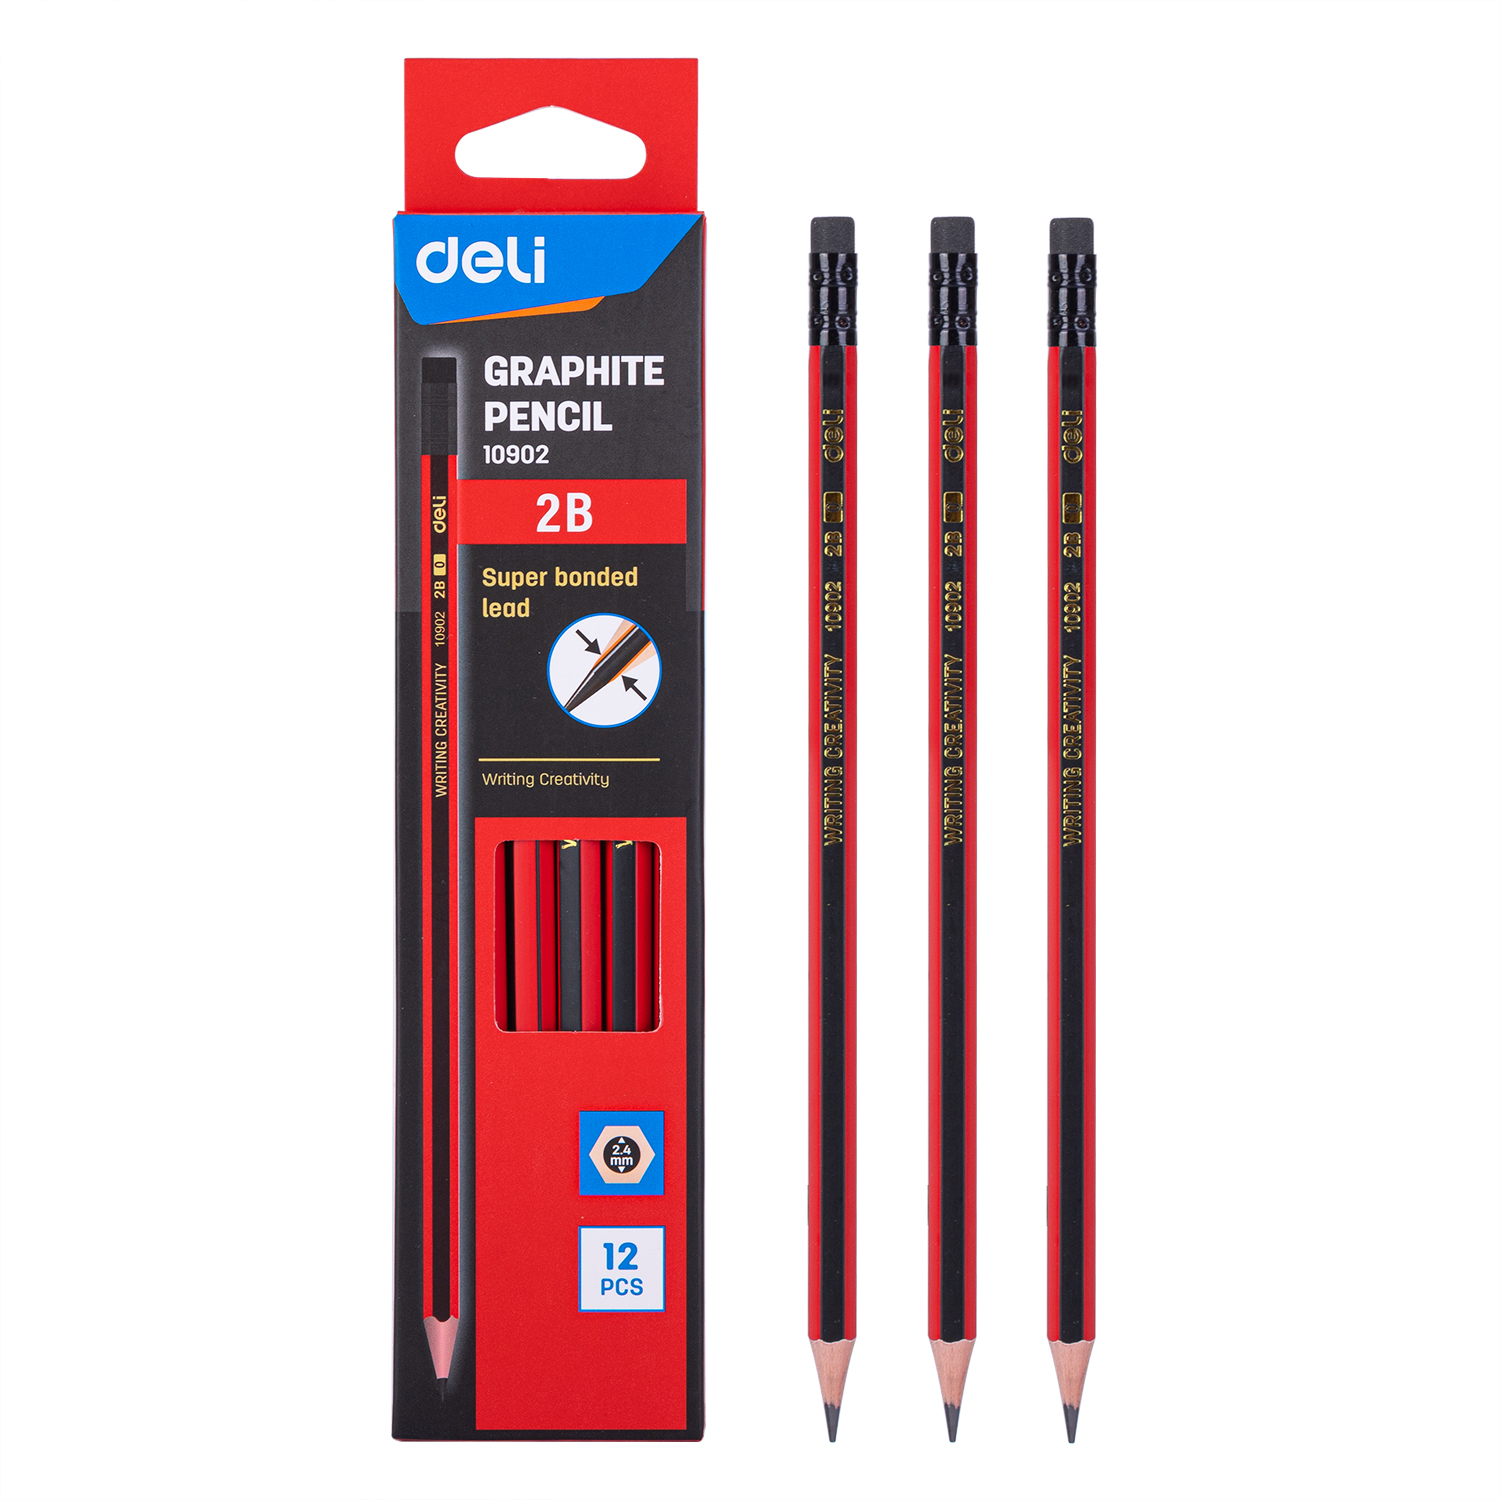 Deli-E10902 Graphite Pencil